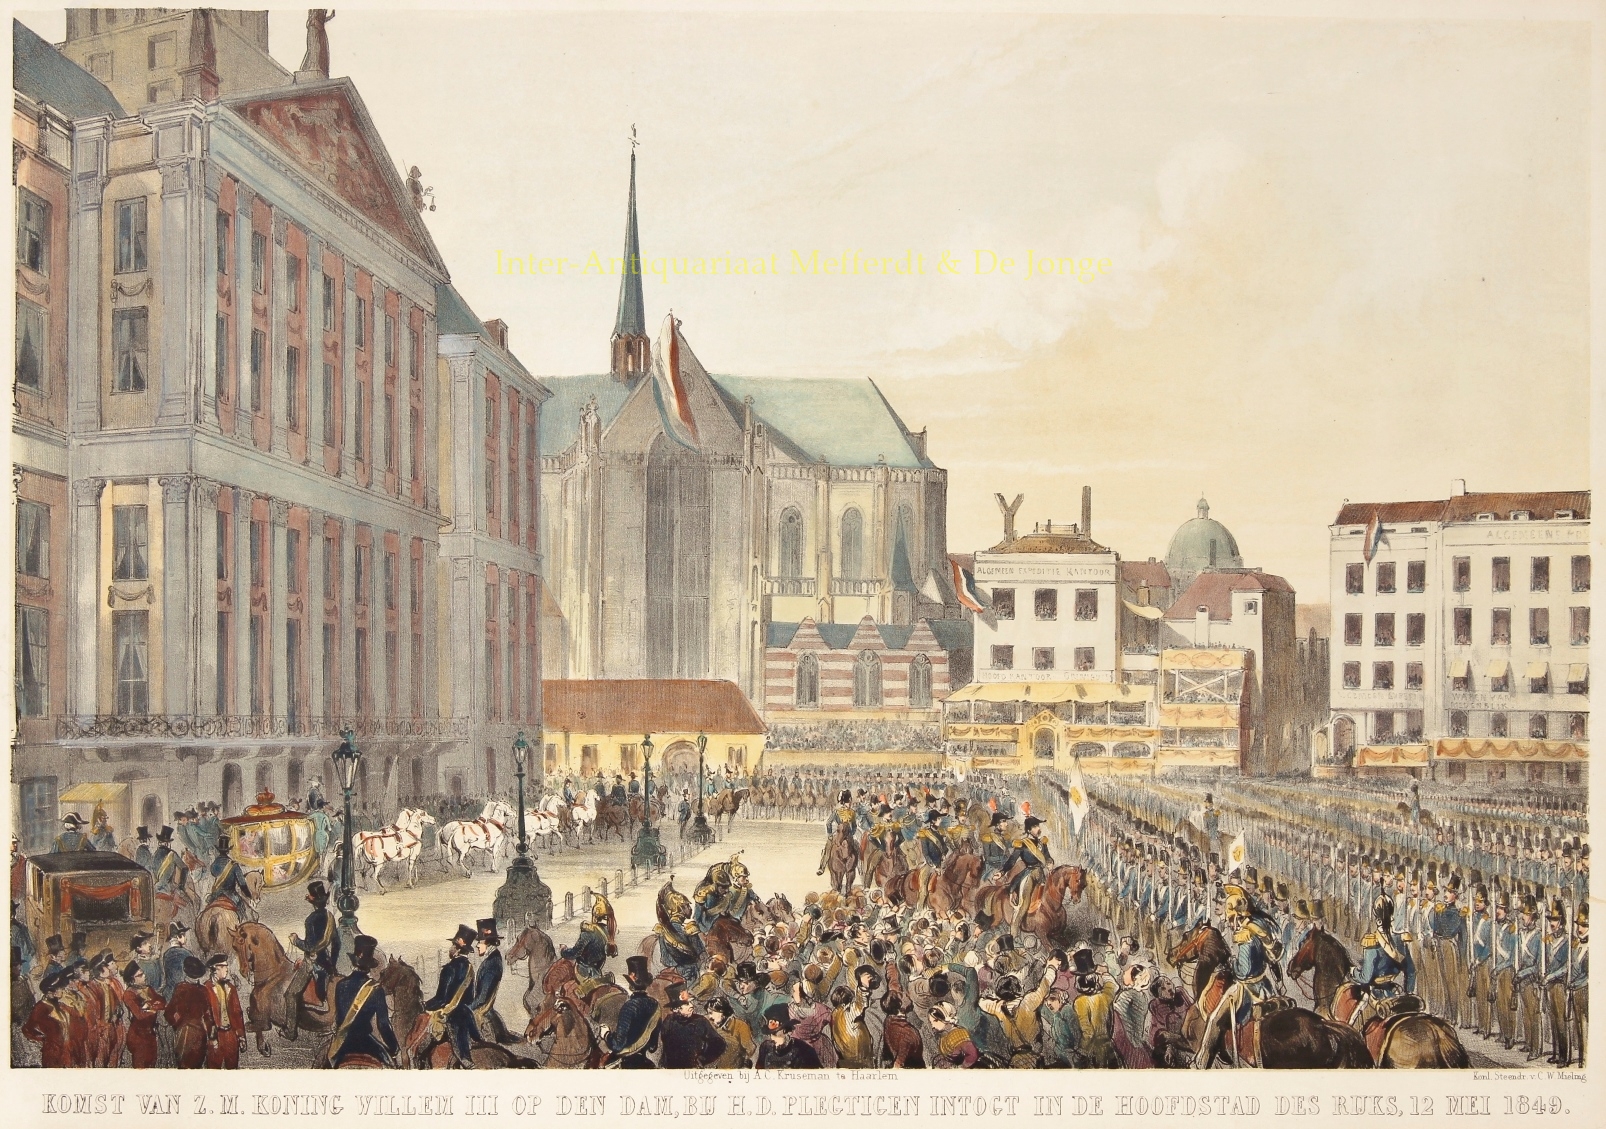  - Amsterdam, intocht Willem III - Charles Rochussen, 1849